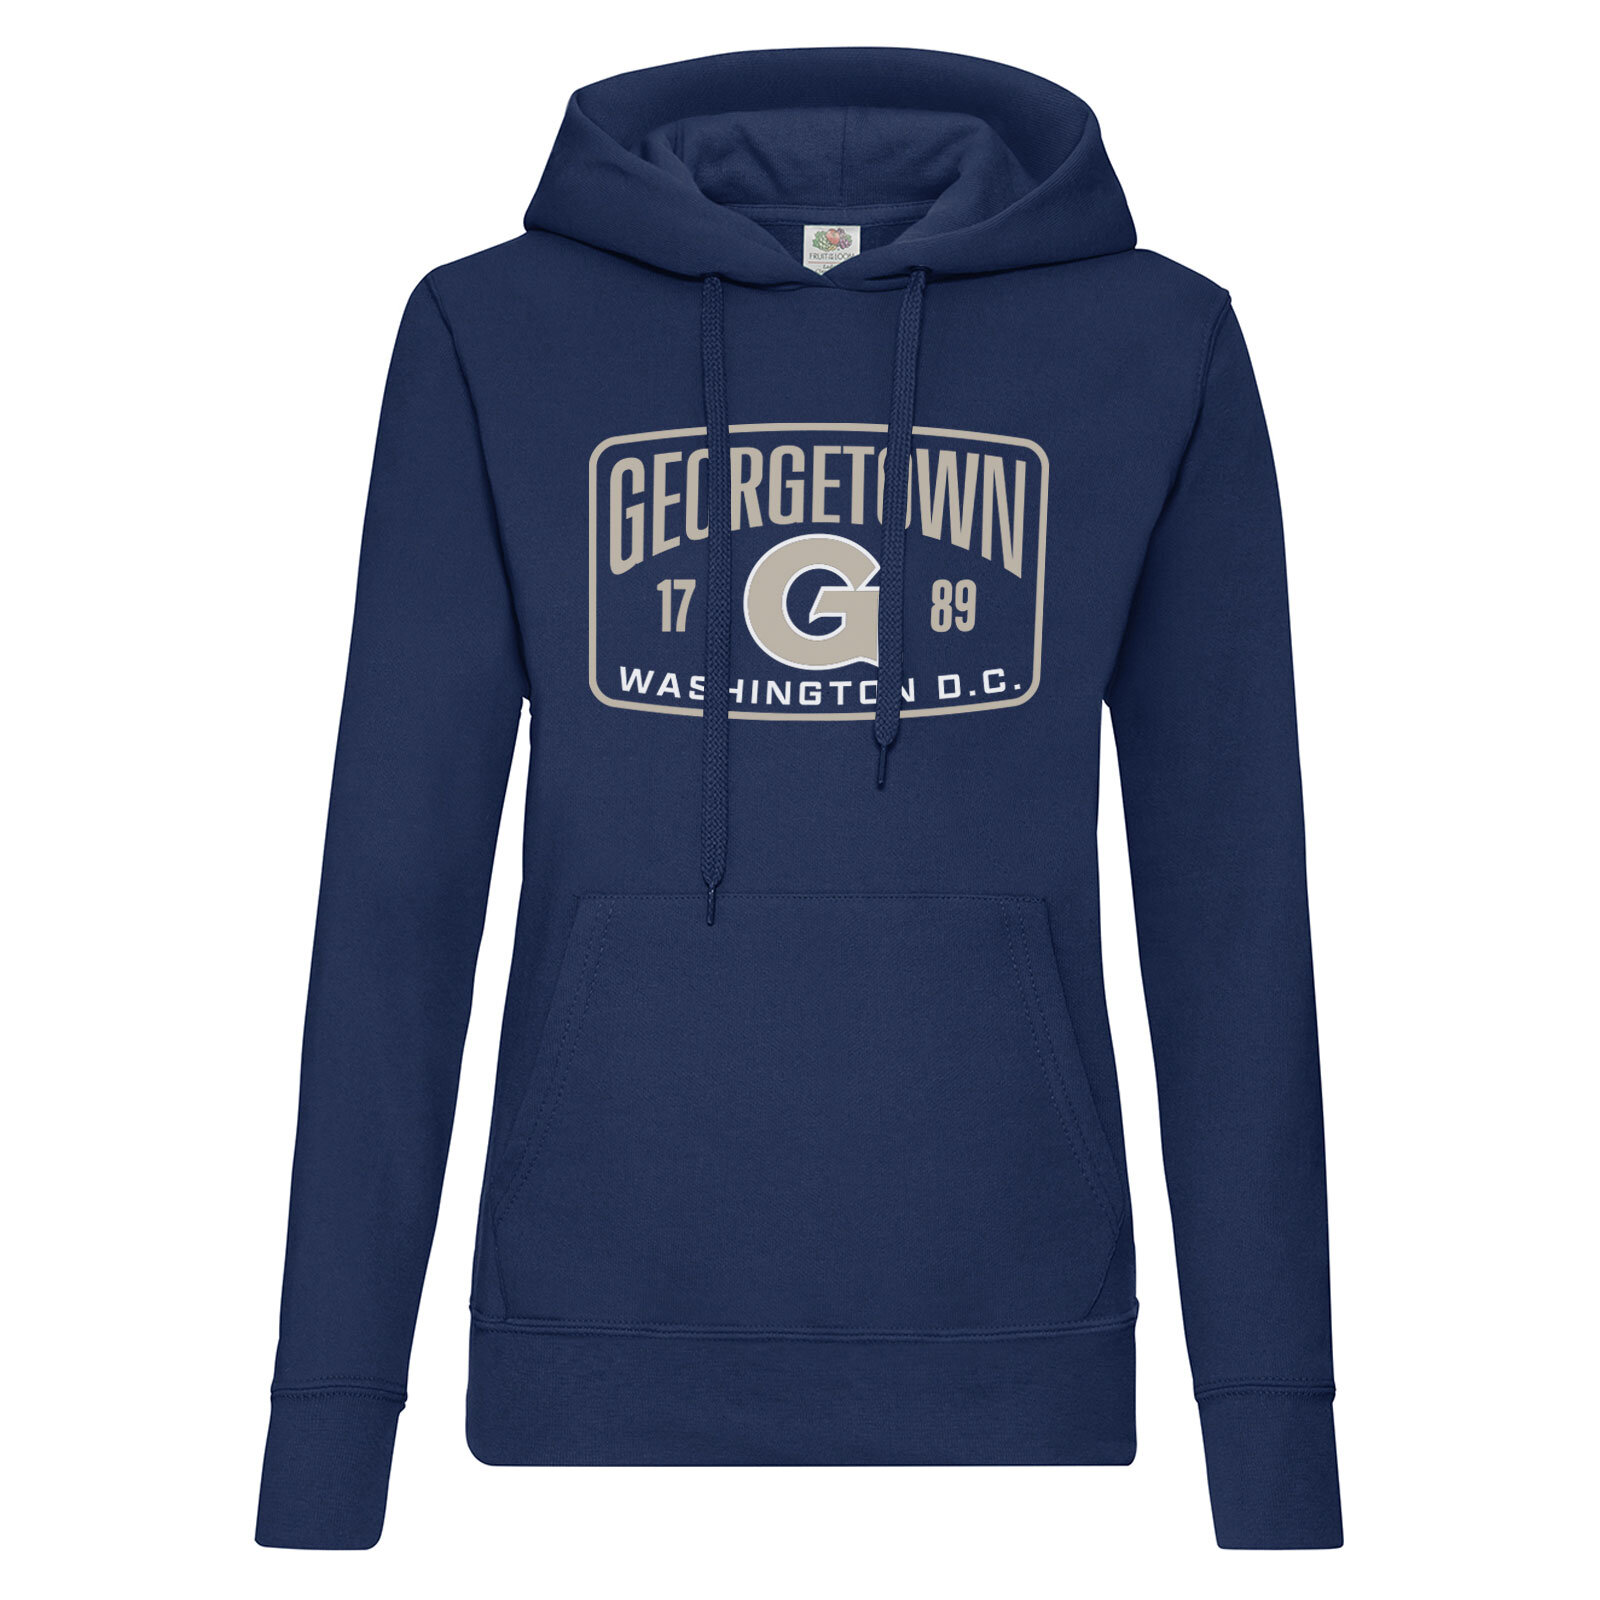 Georgetown Since 1789 Girls Hoodie